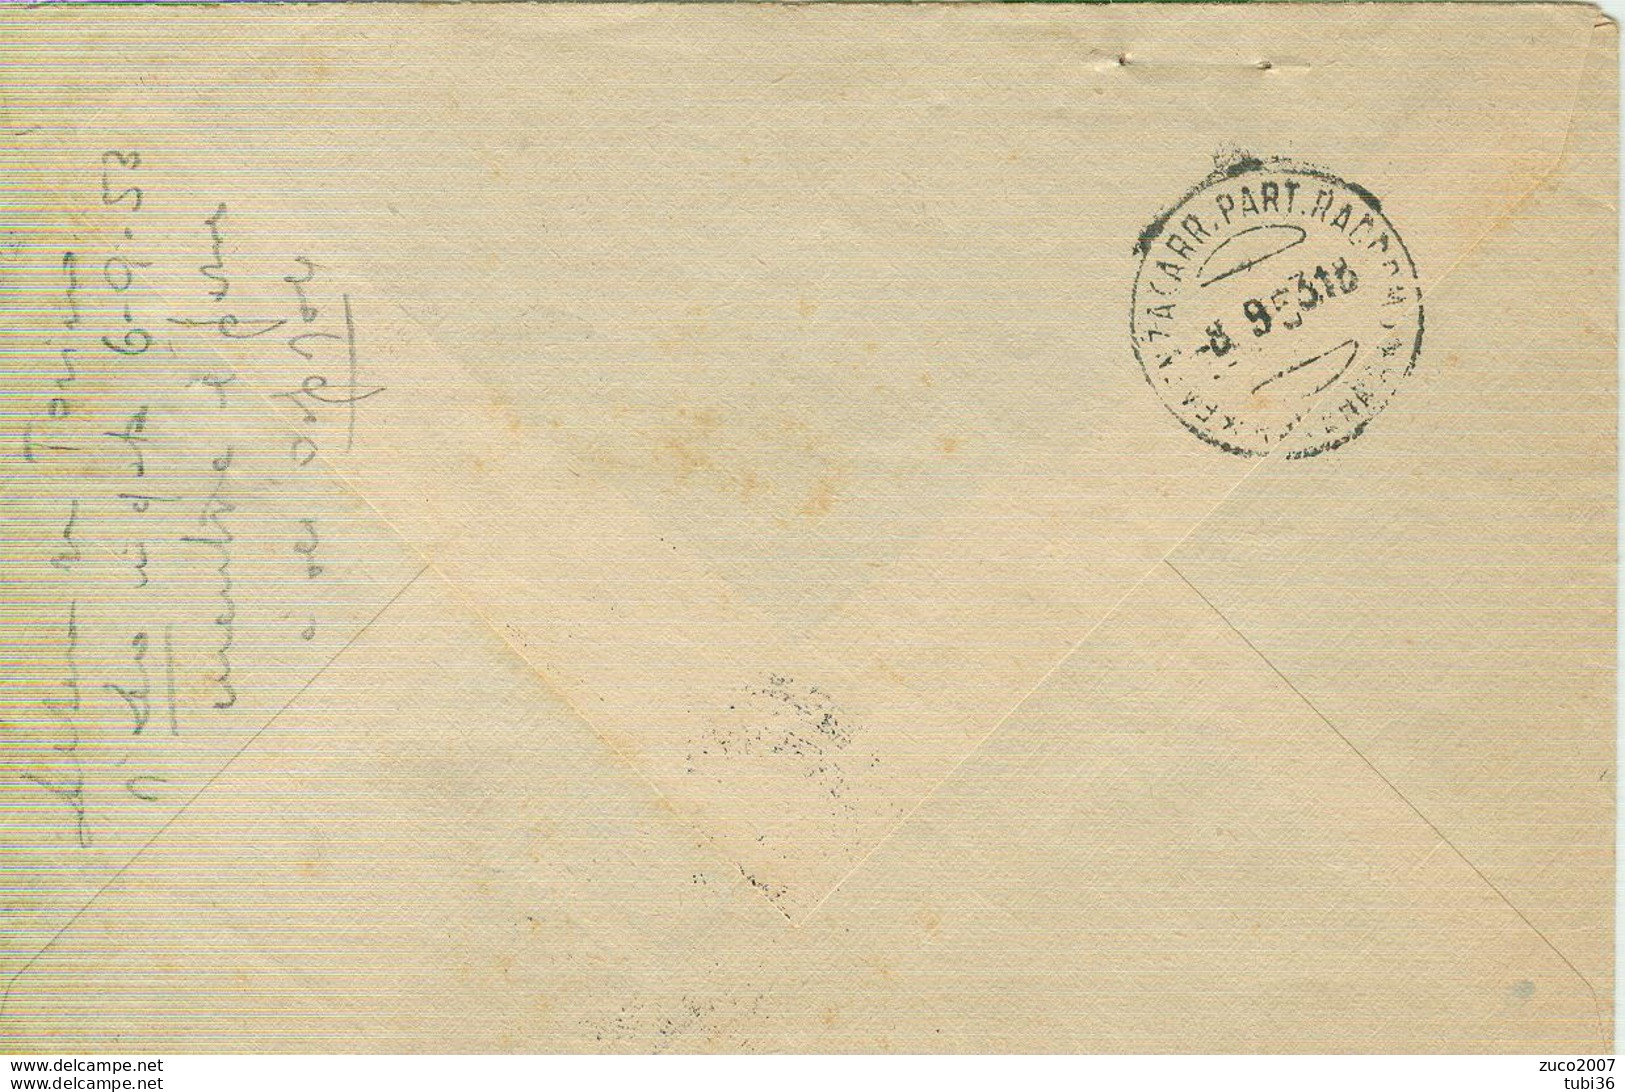 SIRACUSANA £.25,TARIFFA LETTERA, 1953,SU BUSTA USO FISCALE CON MARCHE DA BOLLO £.100+60,TIMBRO POSTE TORINO-FAENZA - Fiscali